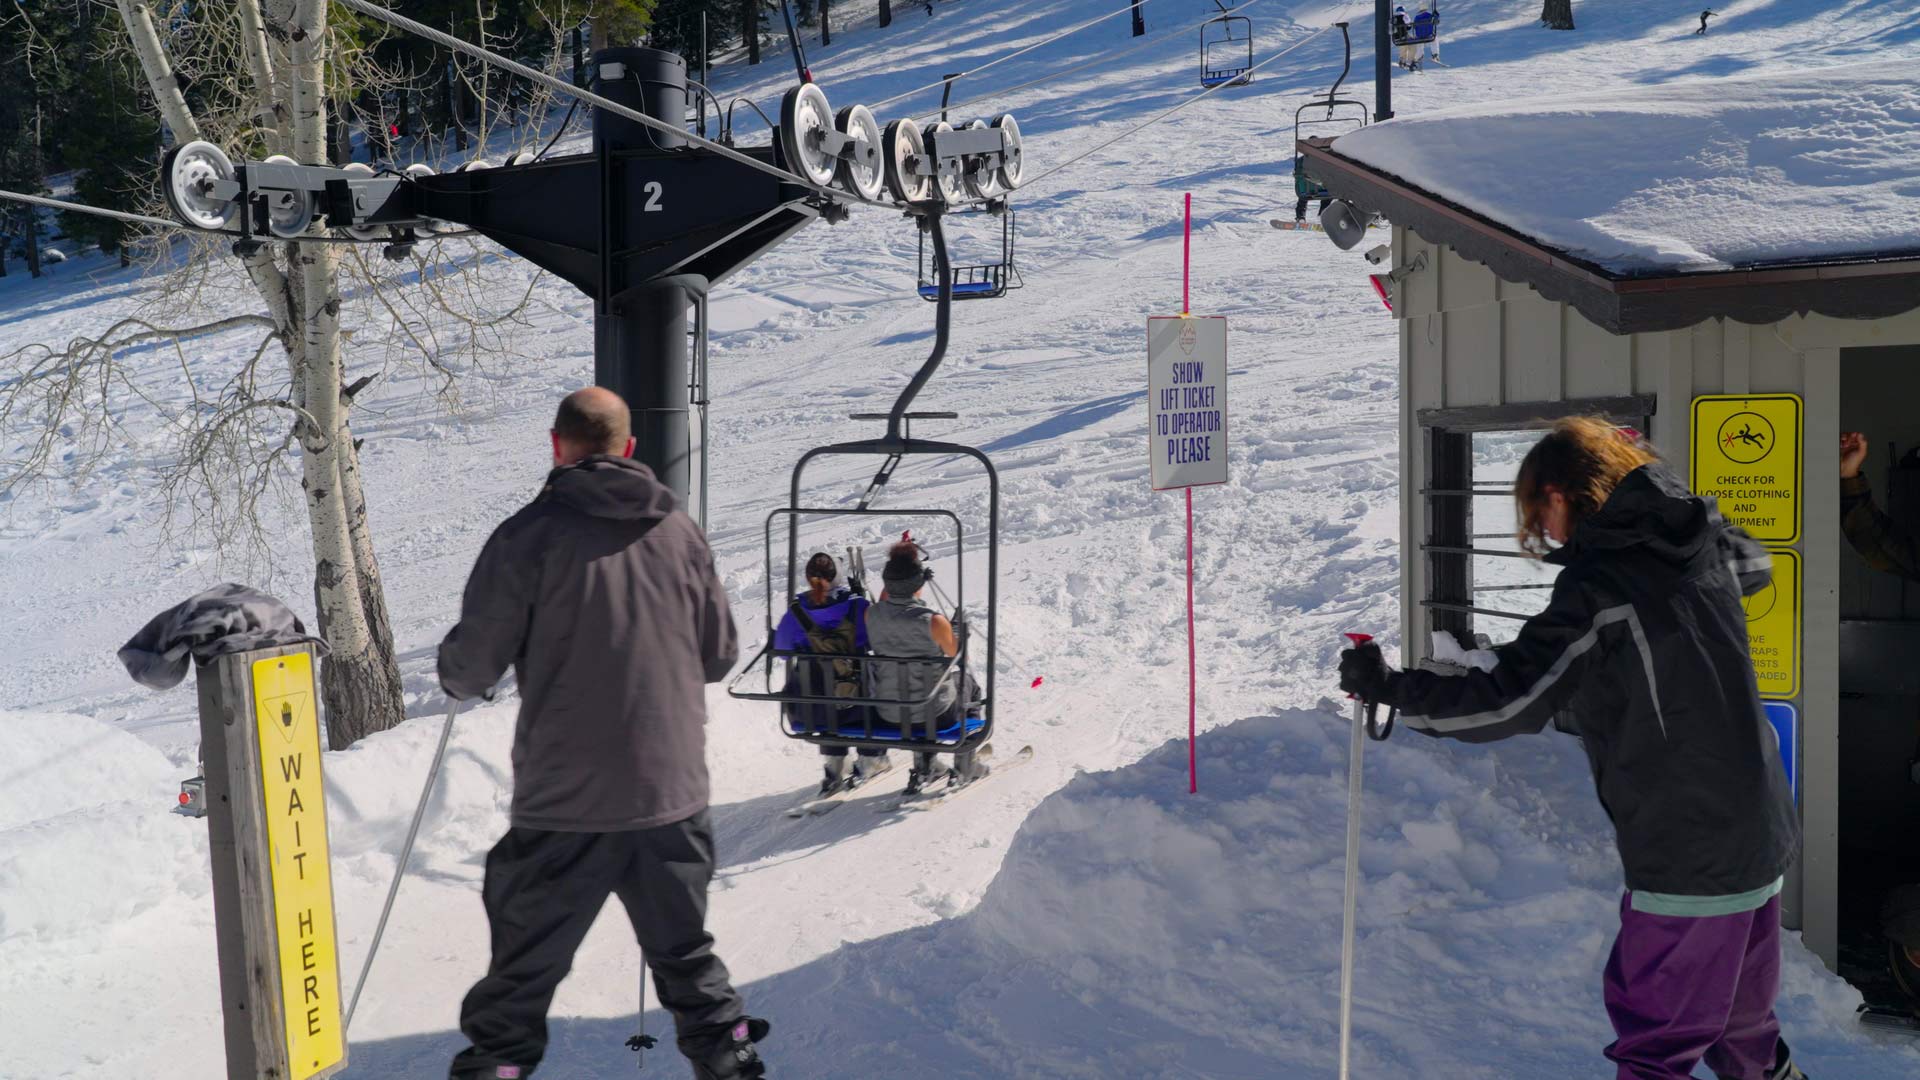 Mount Lemmon Ski Valley